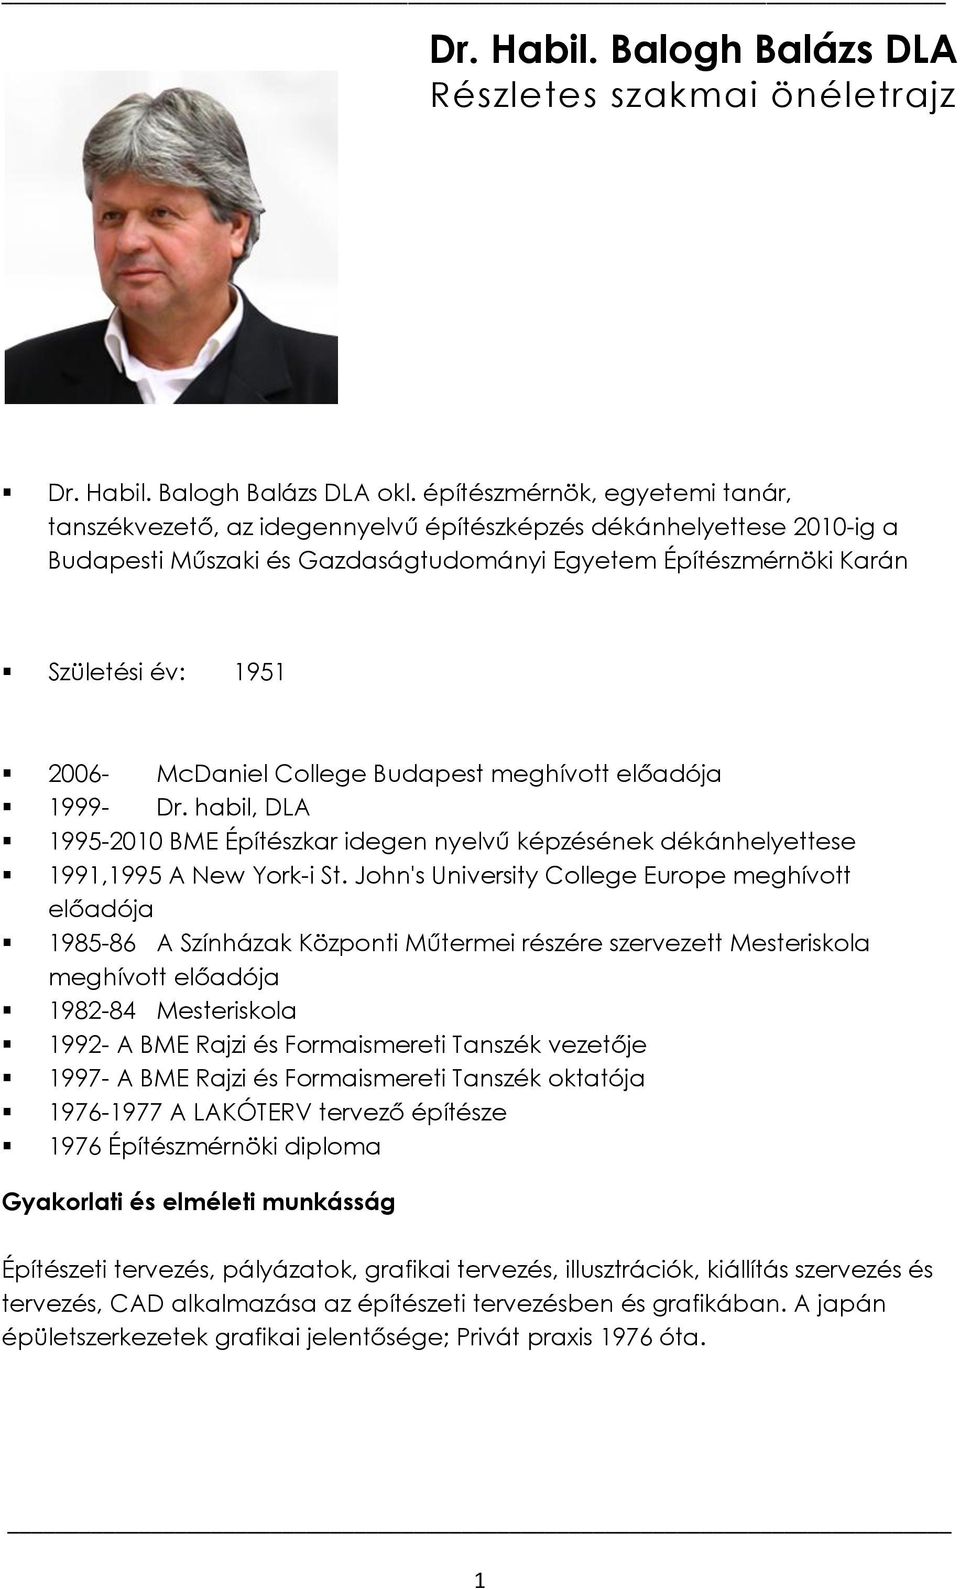 McDaniel College Budapest meghívott előadója 1999- Dr. habil, DLA 1995-2010 BME Építészkar idegen nyelvű képzésének dékánhelyettese 1991,1995 A New York-i St.